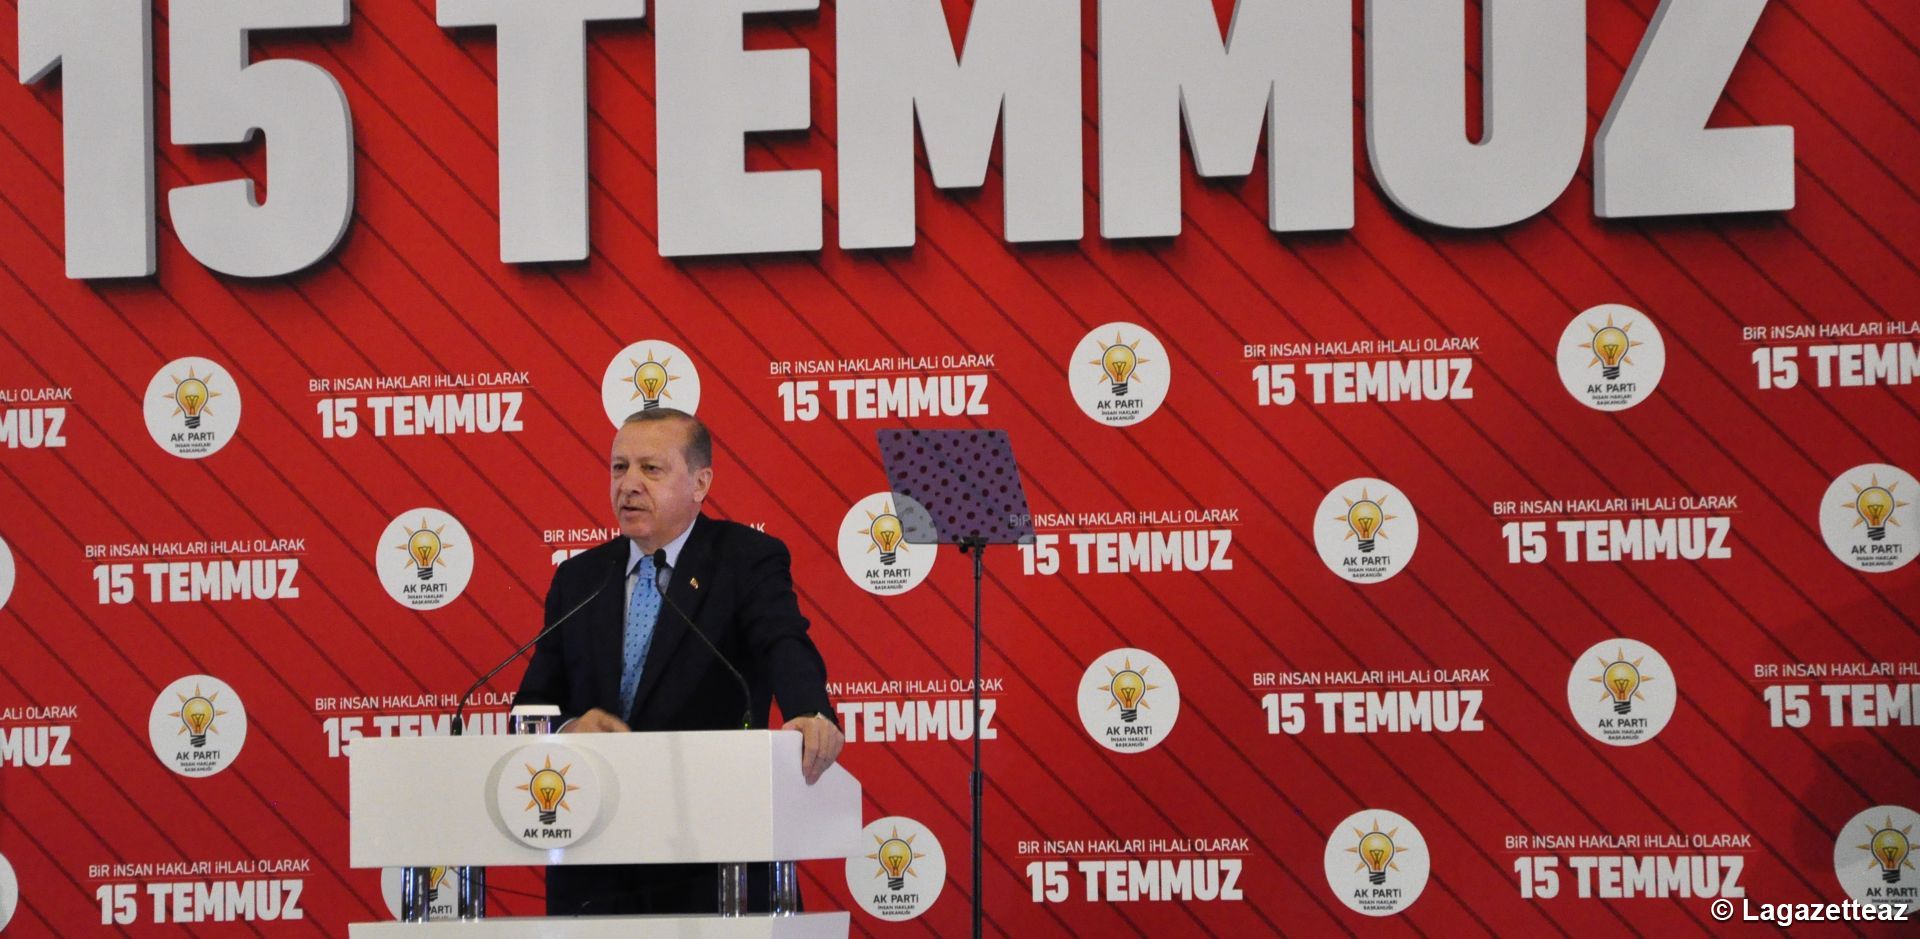 Erdogan a déclaré la condition d'une paix durable à Chypre